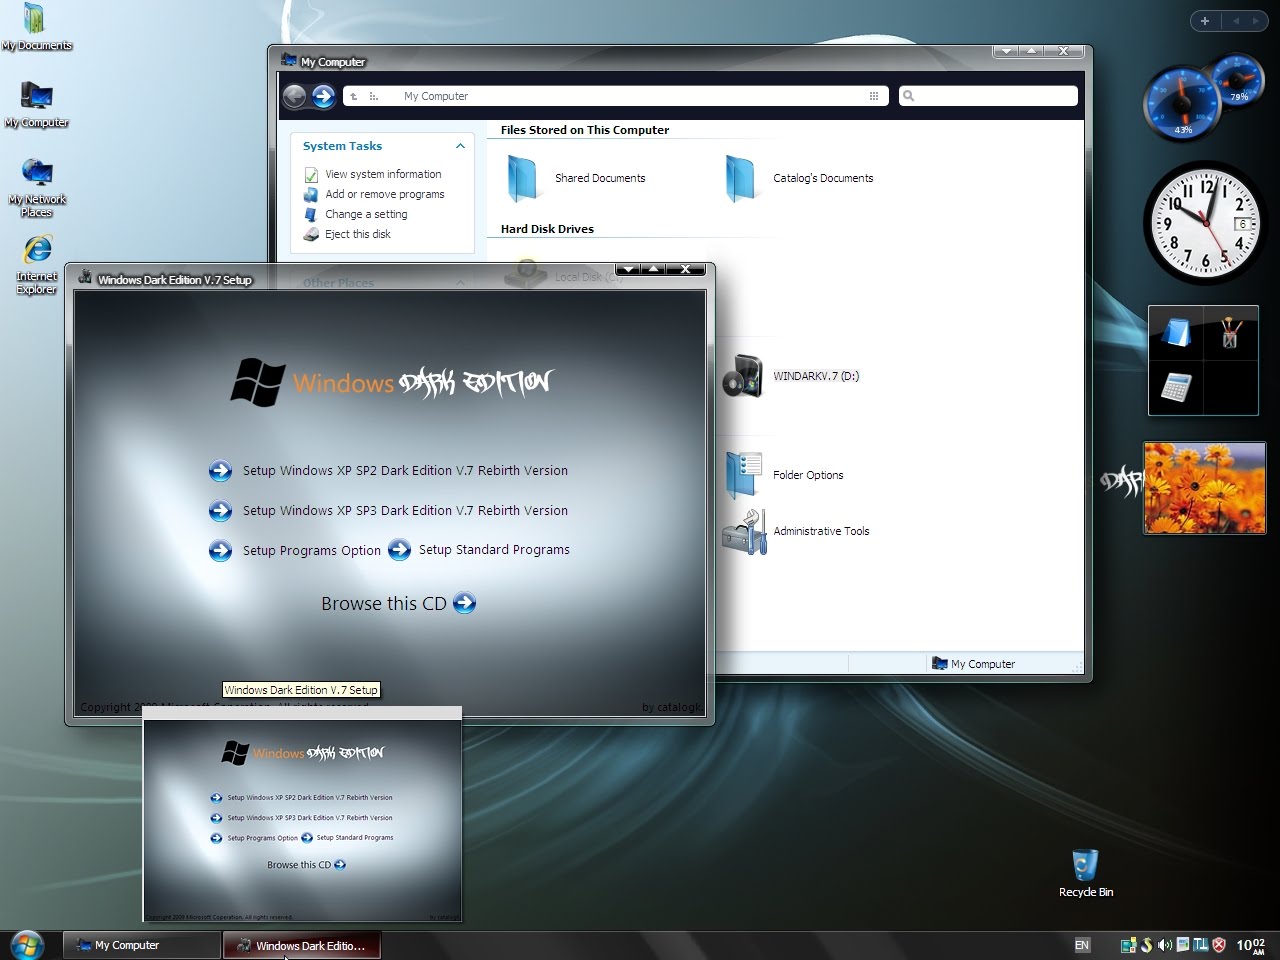 windows xp sp3 darklite edition 2011 iso download